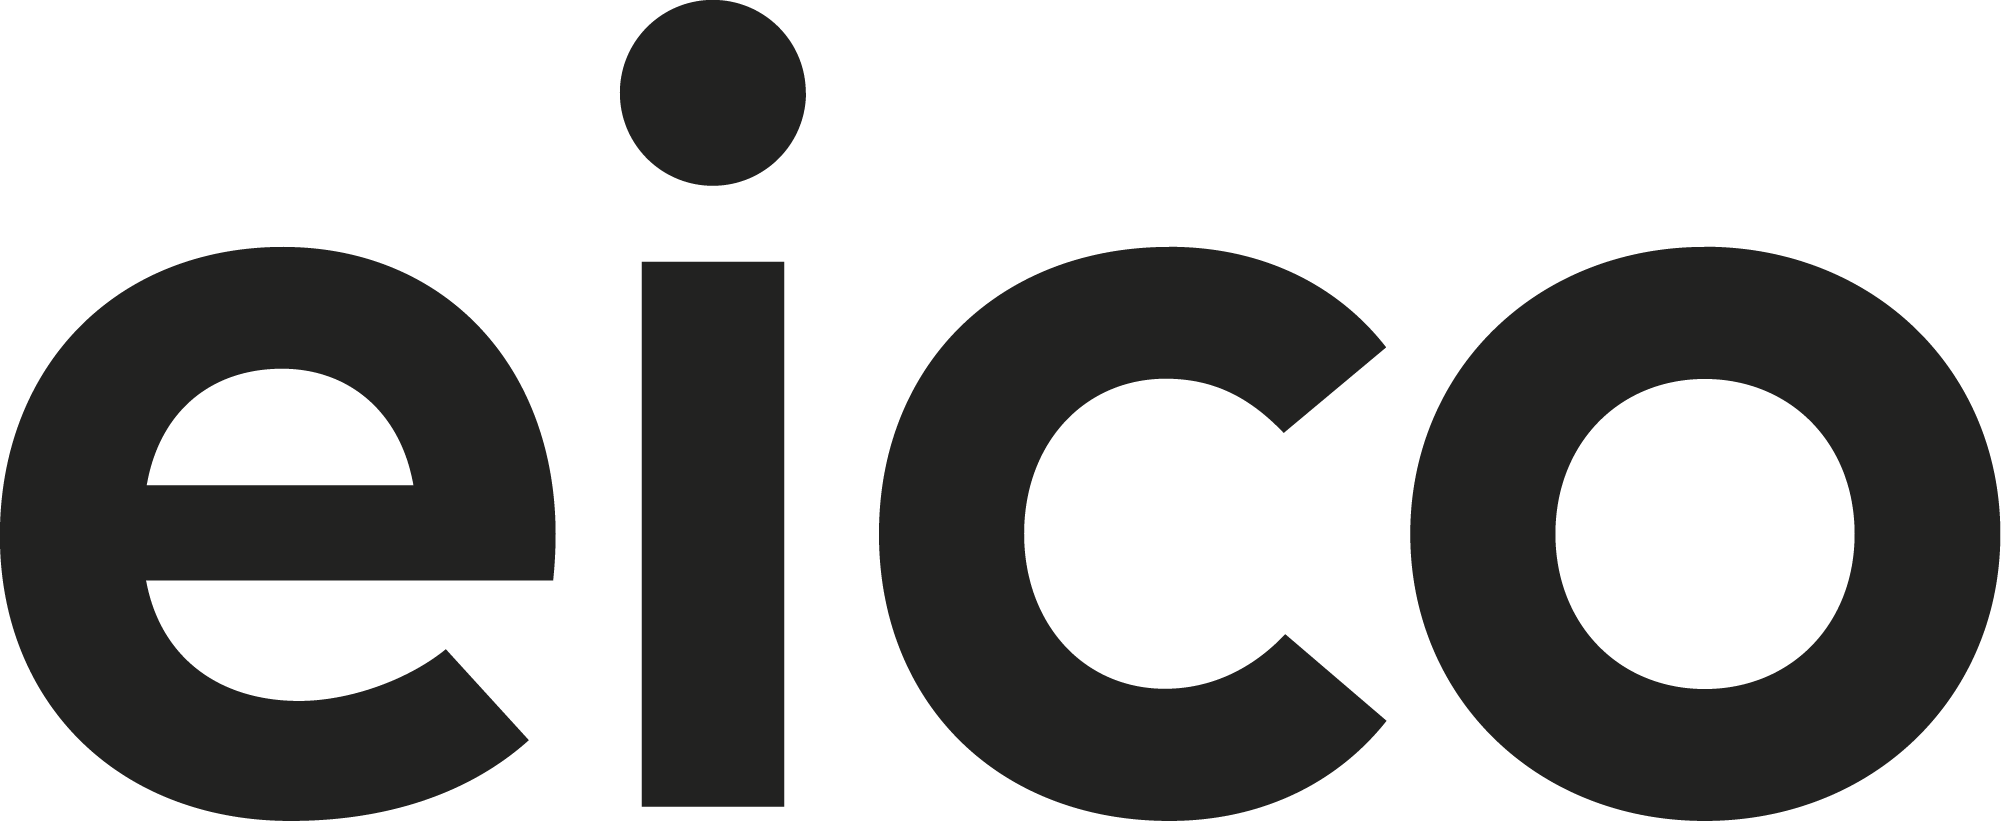 Eico_Logo_Black-01